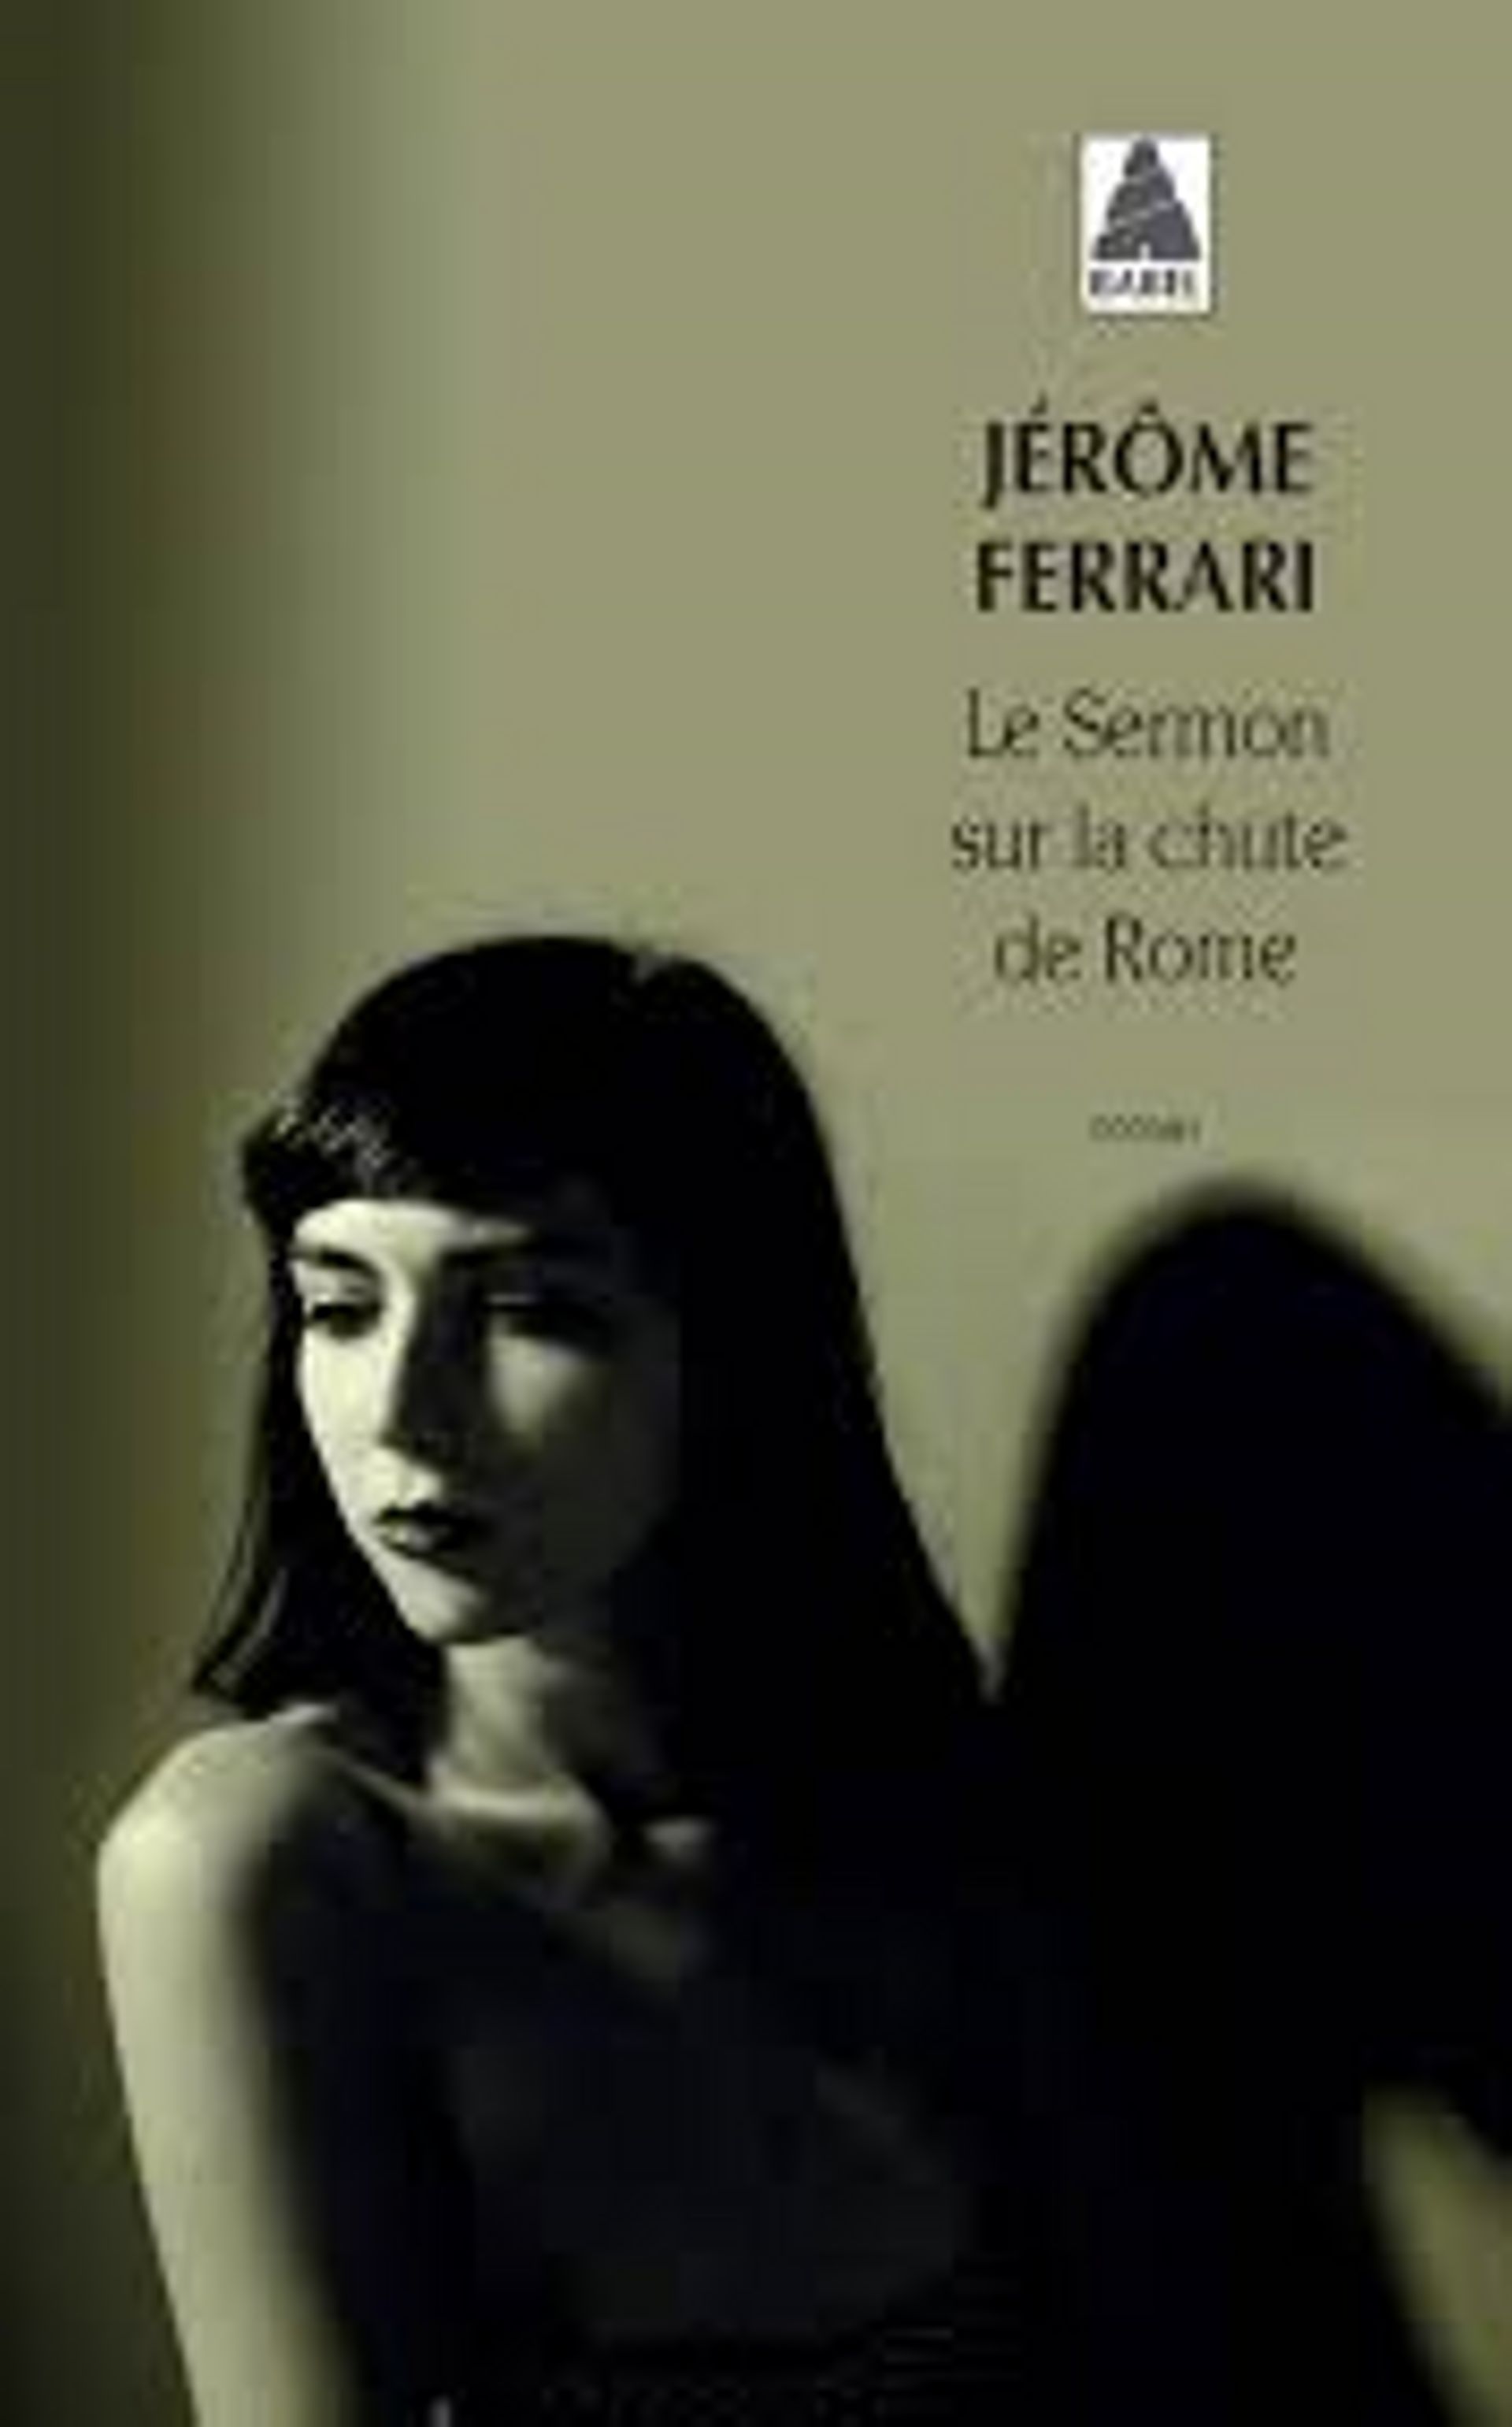 "Le sermon sur la chute de Rome" de Jérôme Ferrari - Ed Babel